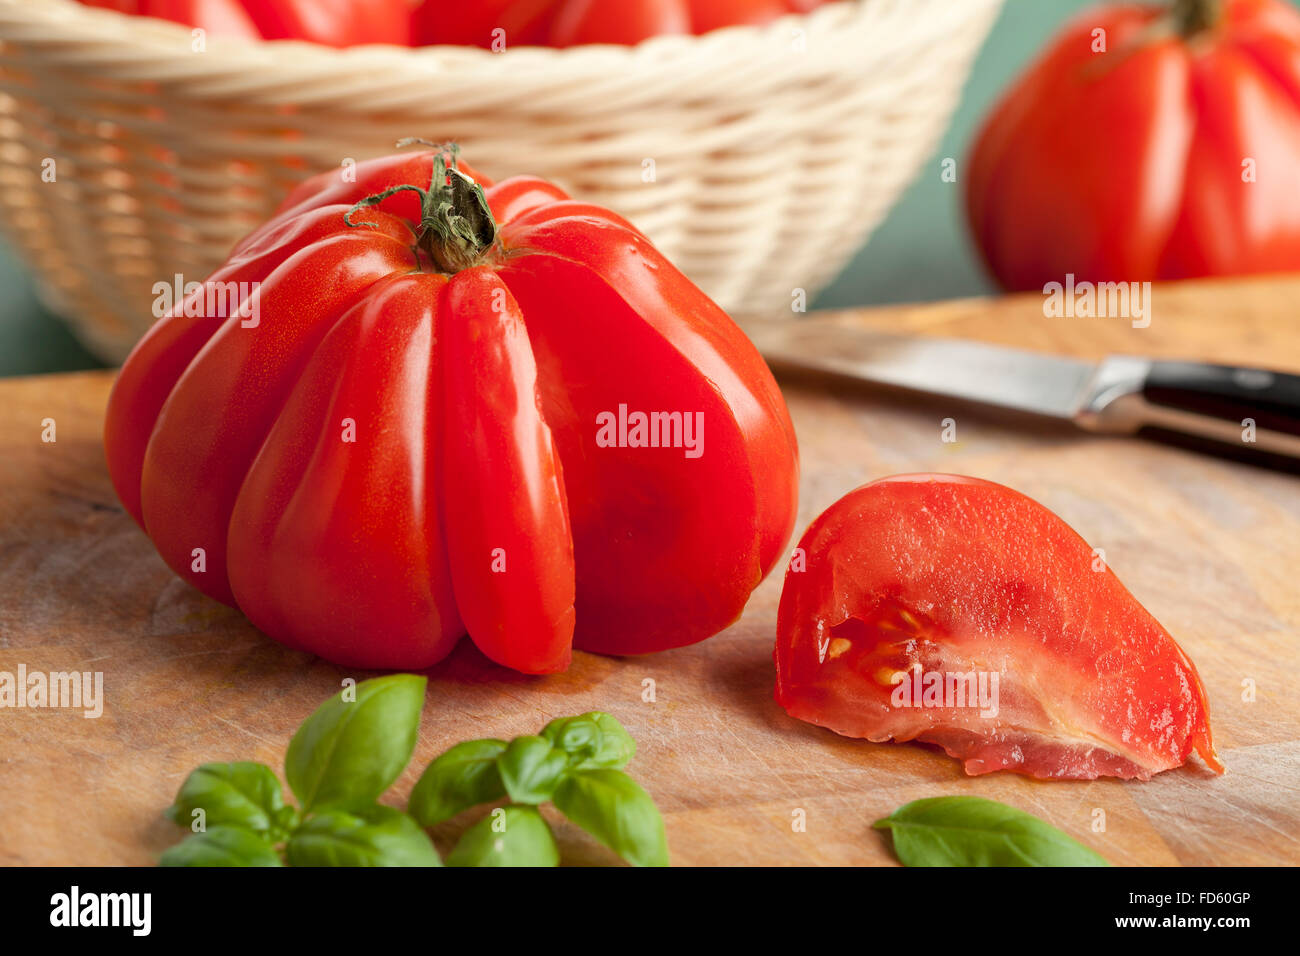 Tranches de tomate Coeur de boeuf Banque D'Images